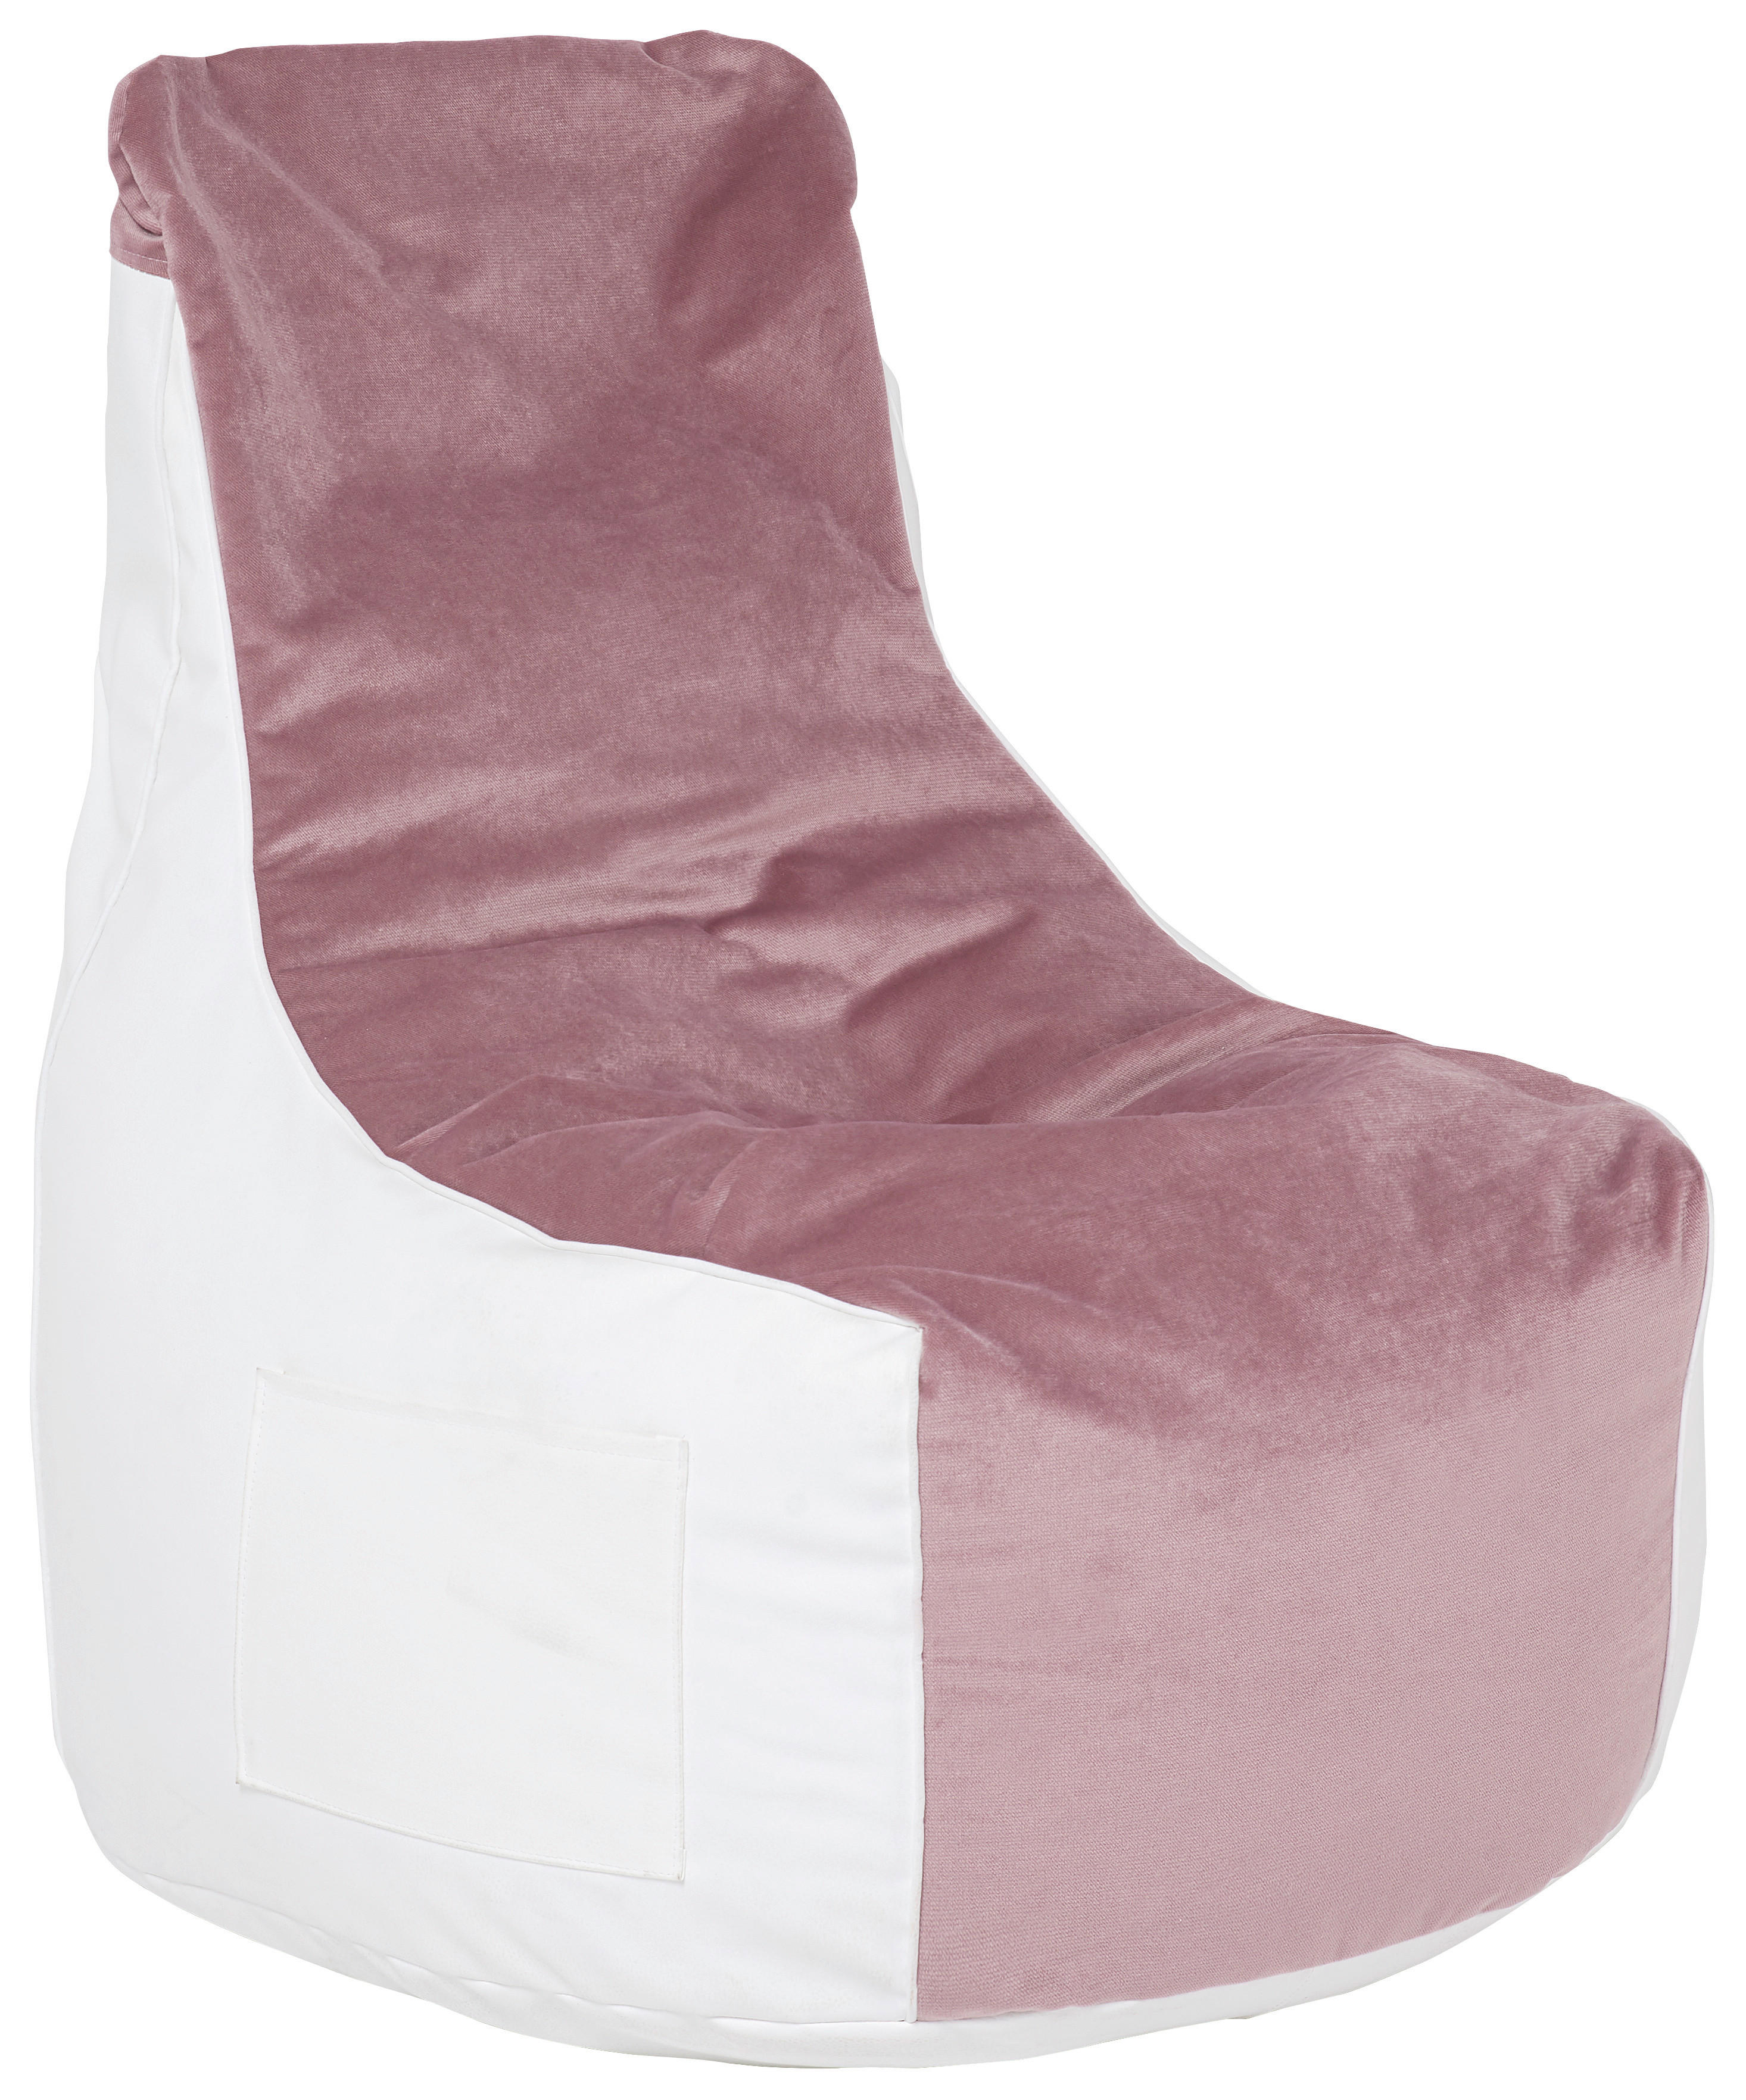 SAC DE ȘEZUT 300 l  - roz deschis/alb, Design, textil (80/100/85cm) - Boxxx